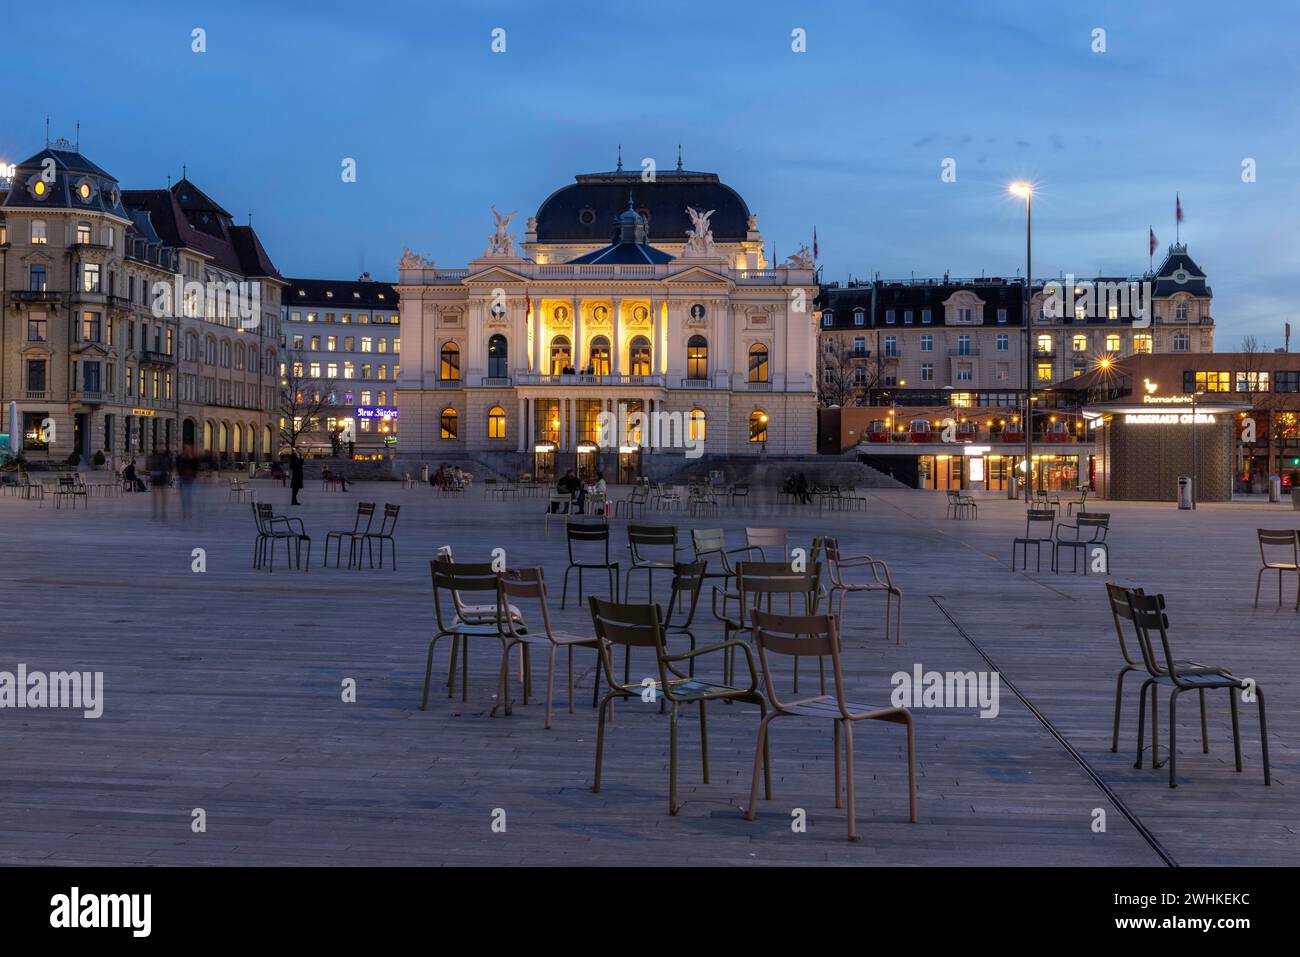 Evening atmosphere at Sechselaeutenplatz, Opera House, City of Zurich, Canton of Zurich, Switzerland Stock Photo